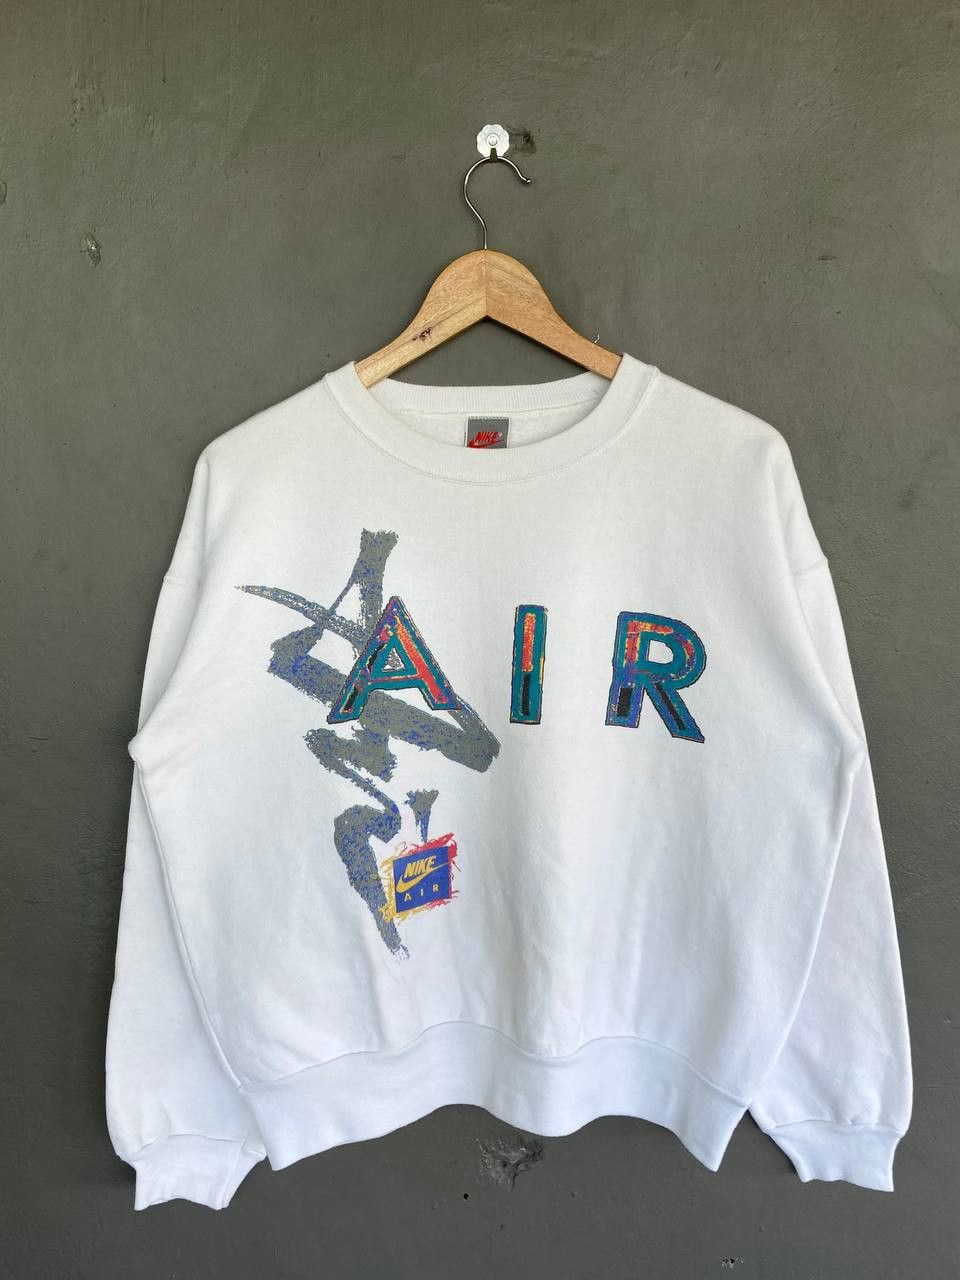 Vintage 1989 Nike Air Spellout Sweatshirt - 1